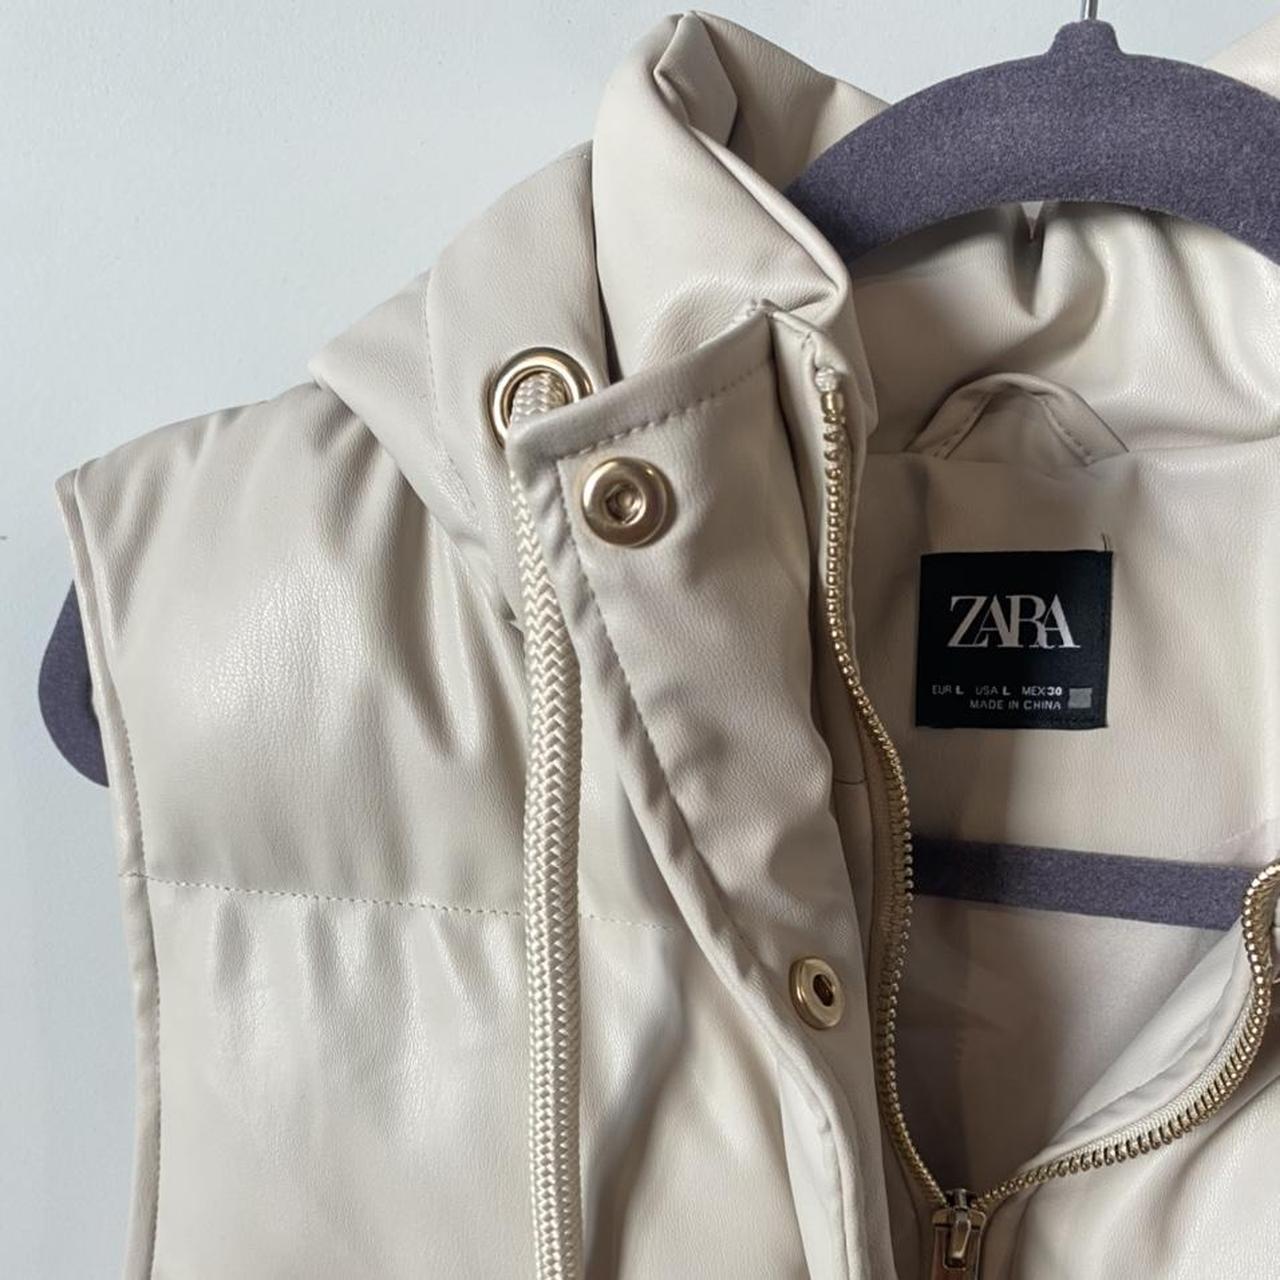 Zara Cream Puffer Vest Never worn. #zara #zaravest... - Depop